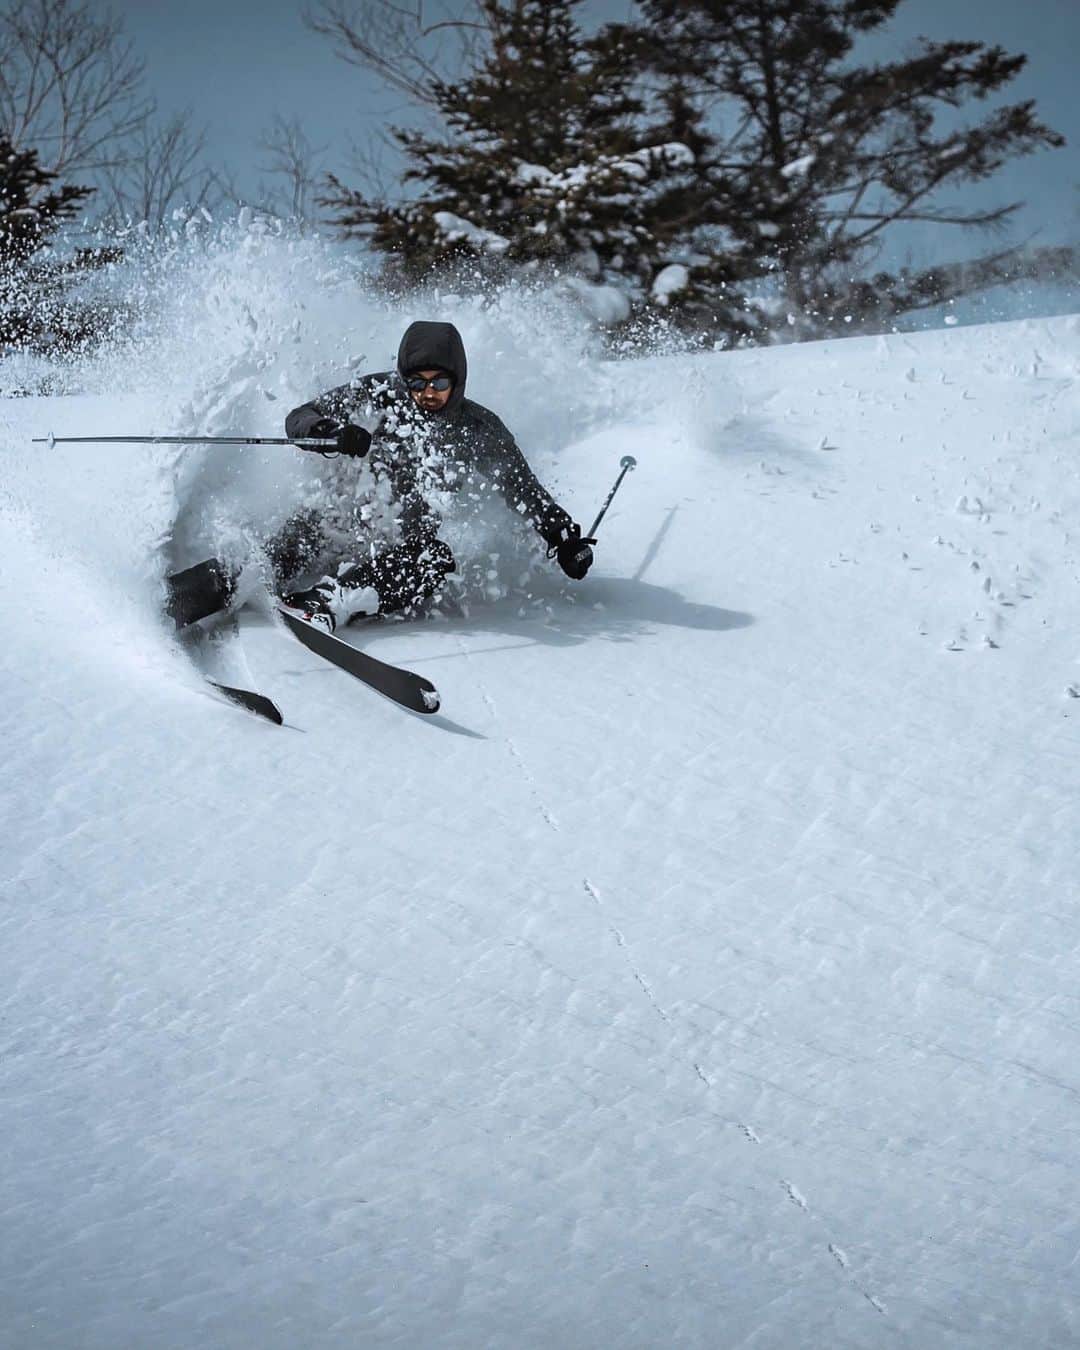 田村幸士のインスタグラム：「. 群馬県嬬恋村とのお仕事で万座温泉スキー場！ 映画「私をスキーに連れてって」の関連グッズを展示してお客様にお話しました。 . あまりにも天候が良かったので仕事の合間にひと滑り。 僕はスキーの準備を全くしていたなかったので、一式を借りて展示したSALLOTのスキーを使用。 . 今シーズンのベストコンディション！圧雪も新雪も充分満喫。 雪も温泉も高いレベルで満喫できる万座温泉でした。 . . . . @sallot_ski  @manza_s_official  @manzaprincehotel_official  . powered by @salomon_japan  @peakperformancejapan  @douchebagsjapan  @dbjourney  @haglofsjapan  @anonopticsjapan  @msrgear_japan  @mot.outdoor.freak  @coreposition  @sonyalpha   photo by @genki_murasato  —— ✂︎ —————— #peakperformance #salomonfreeski #dbjourney #dbtravel #backcountryskiing #powdersnow #japow #haglöfs #snowlife #skiingplanet #sonya7c #嬬恋村 #嬬恋 #万座温泉 #万座温泉スキー場 #万座温泉プリンスホテル #私をスキーに連れてって #サロット #SALLOT #私スキ #スキー #志賀高原 #バックカントリー #バックカントリースキー #パウダースノー #群馬県 #温泉旅行 #雪国 #スキー部 #雪景色」